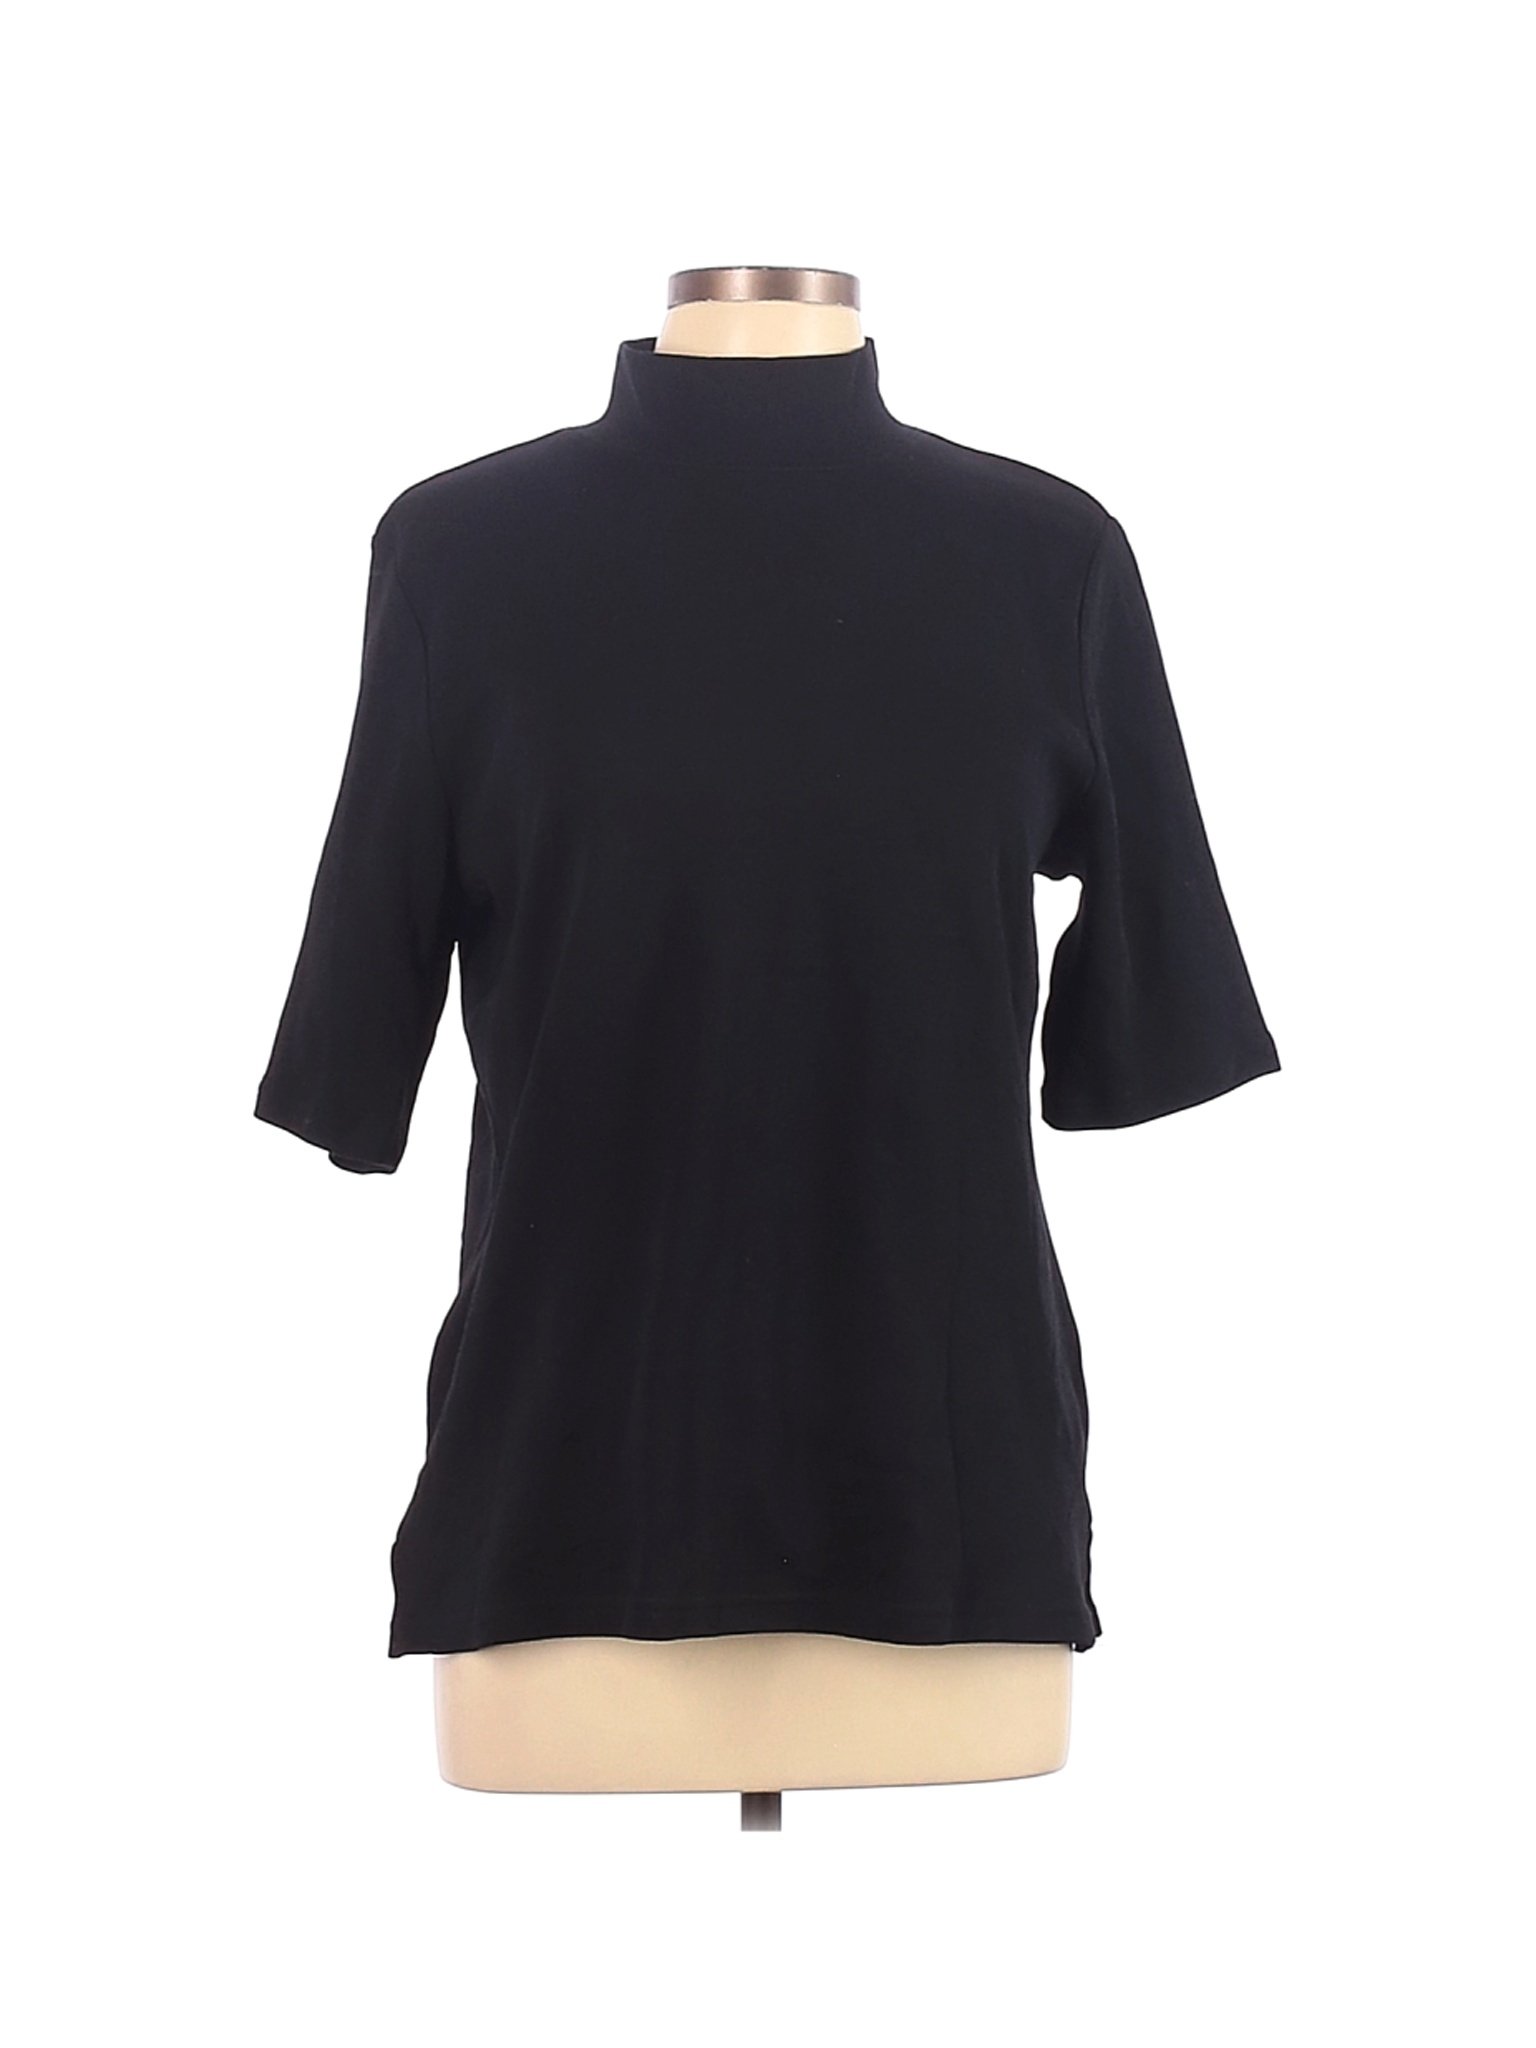 Karen Scott Women Black Short Sleeve Turtleneck L | eBay